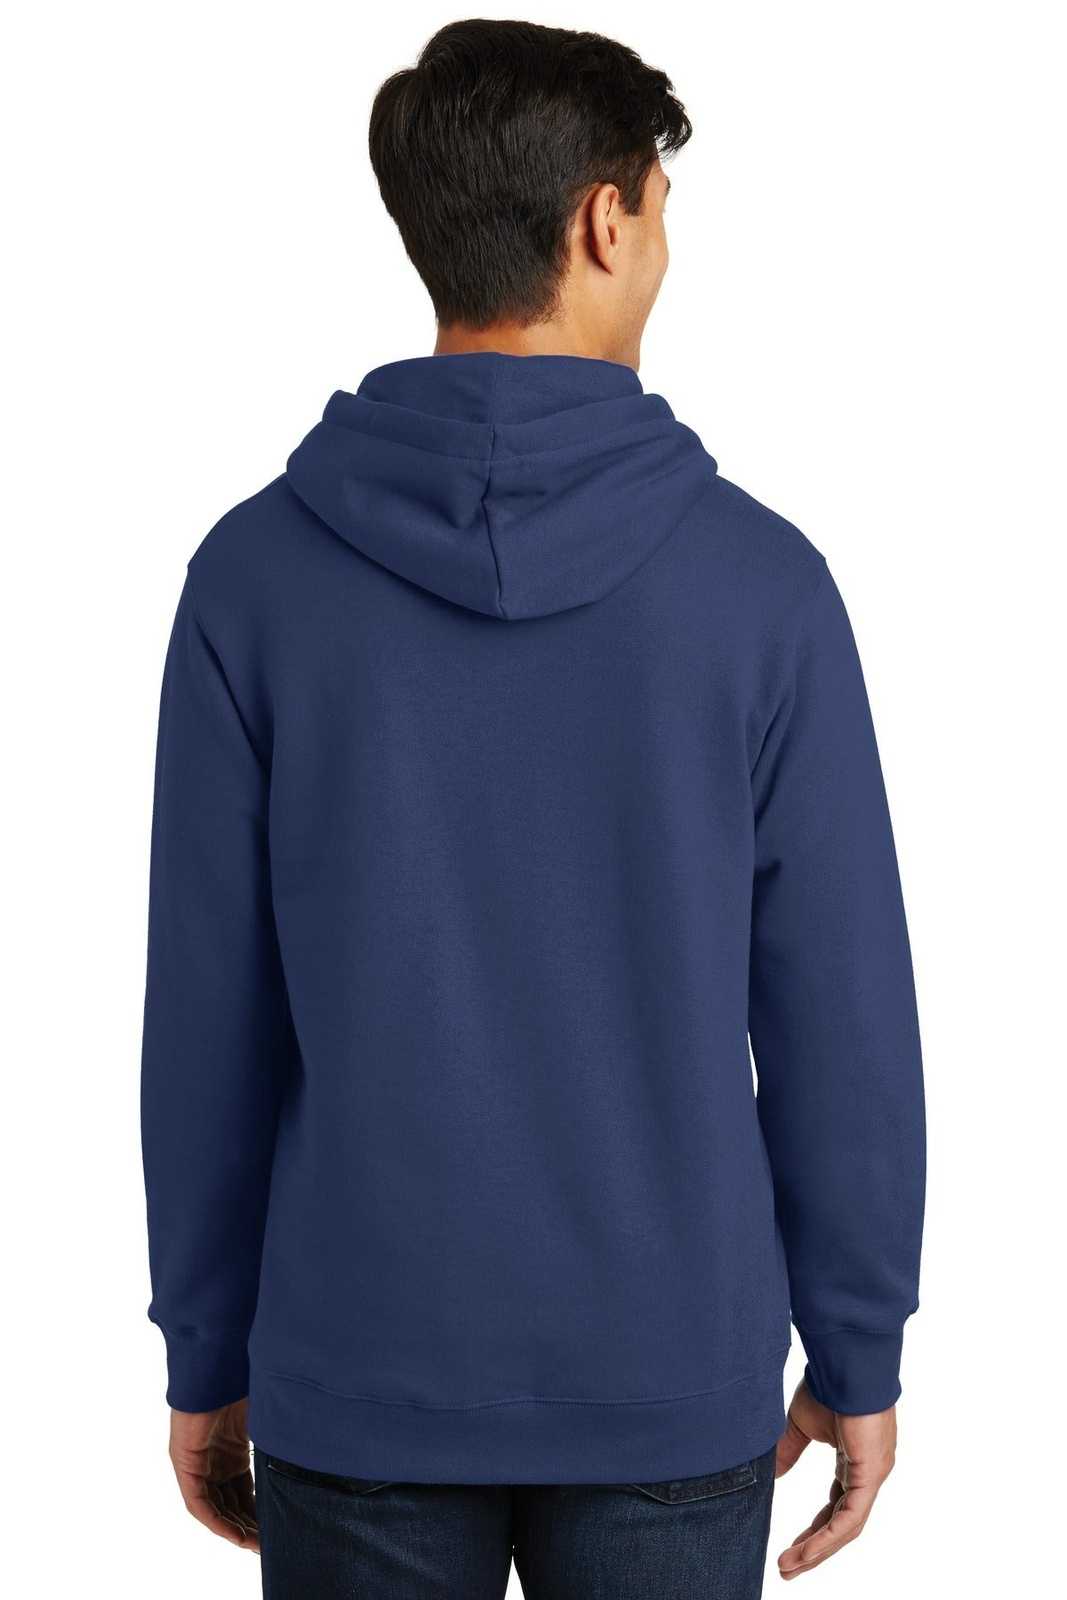 Port & Company PC850H Fan Favorite Fleece Pullover Hooded Sweatshirt - Team Navy - HIT a Double - 1